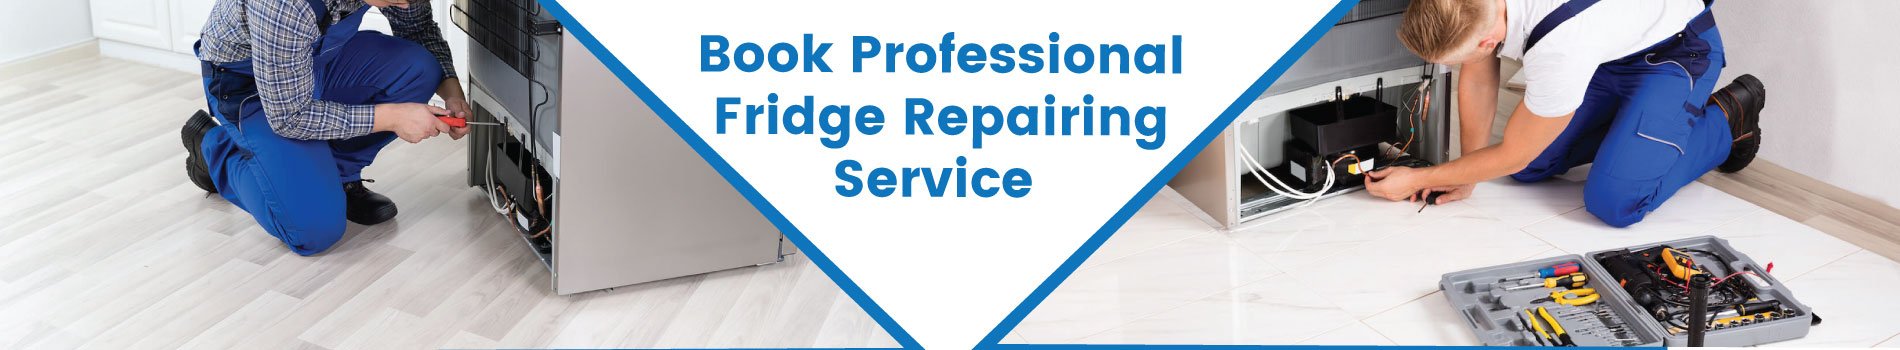 Fridge repairing service